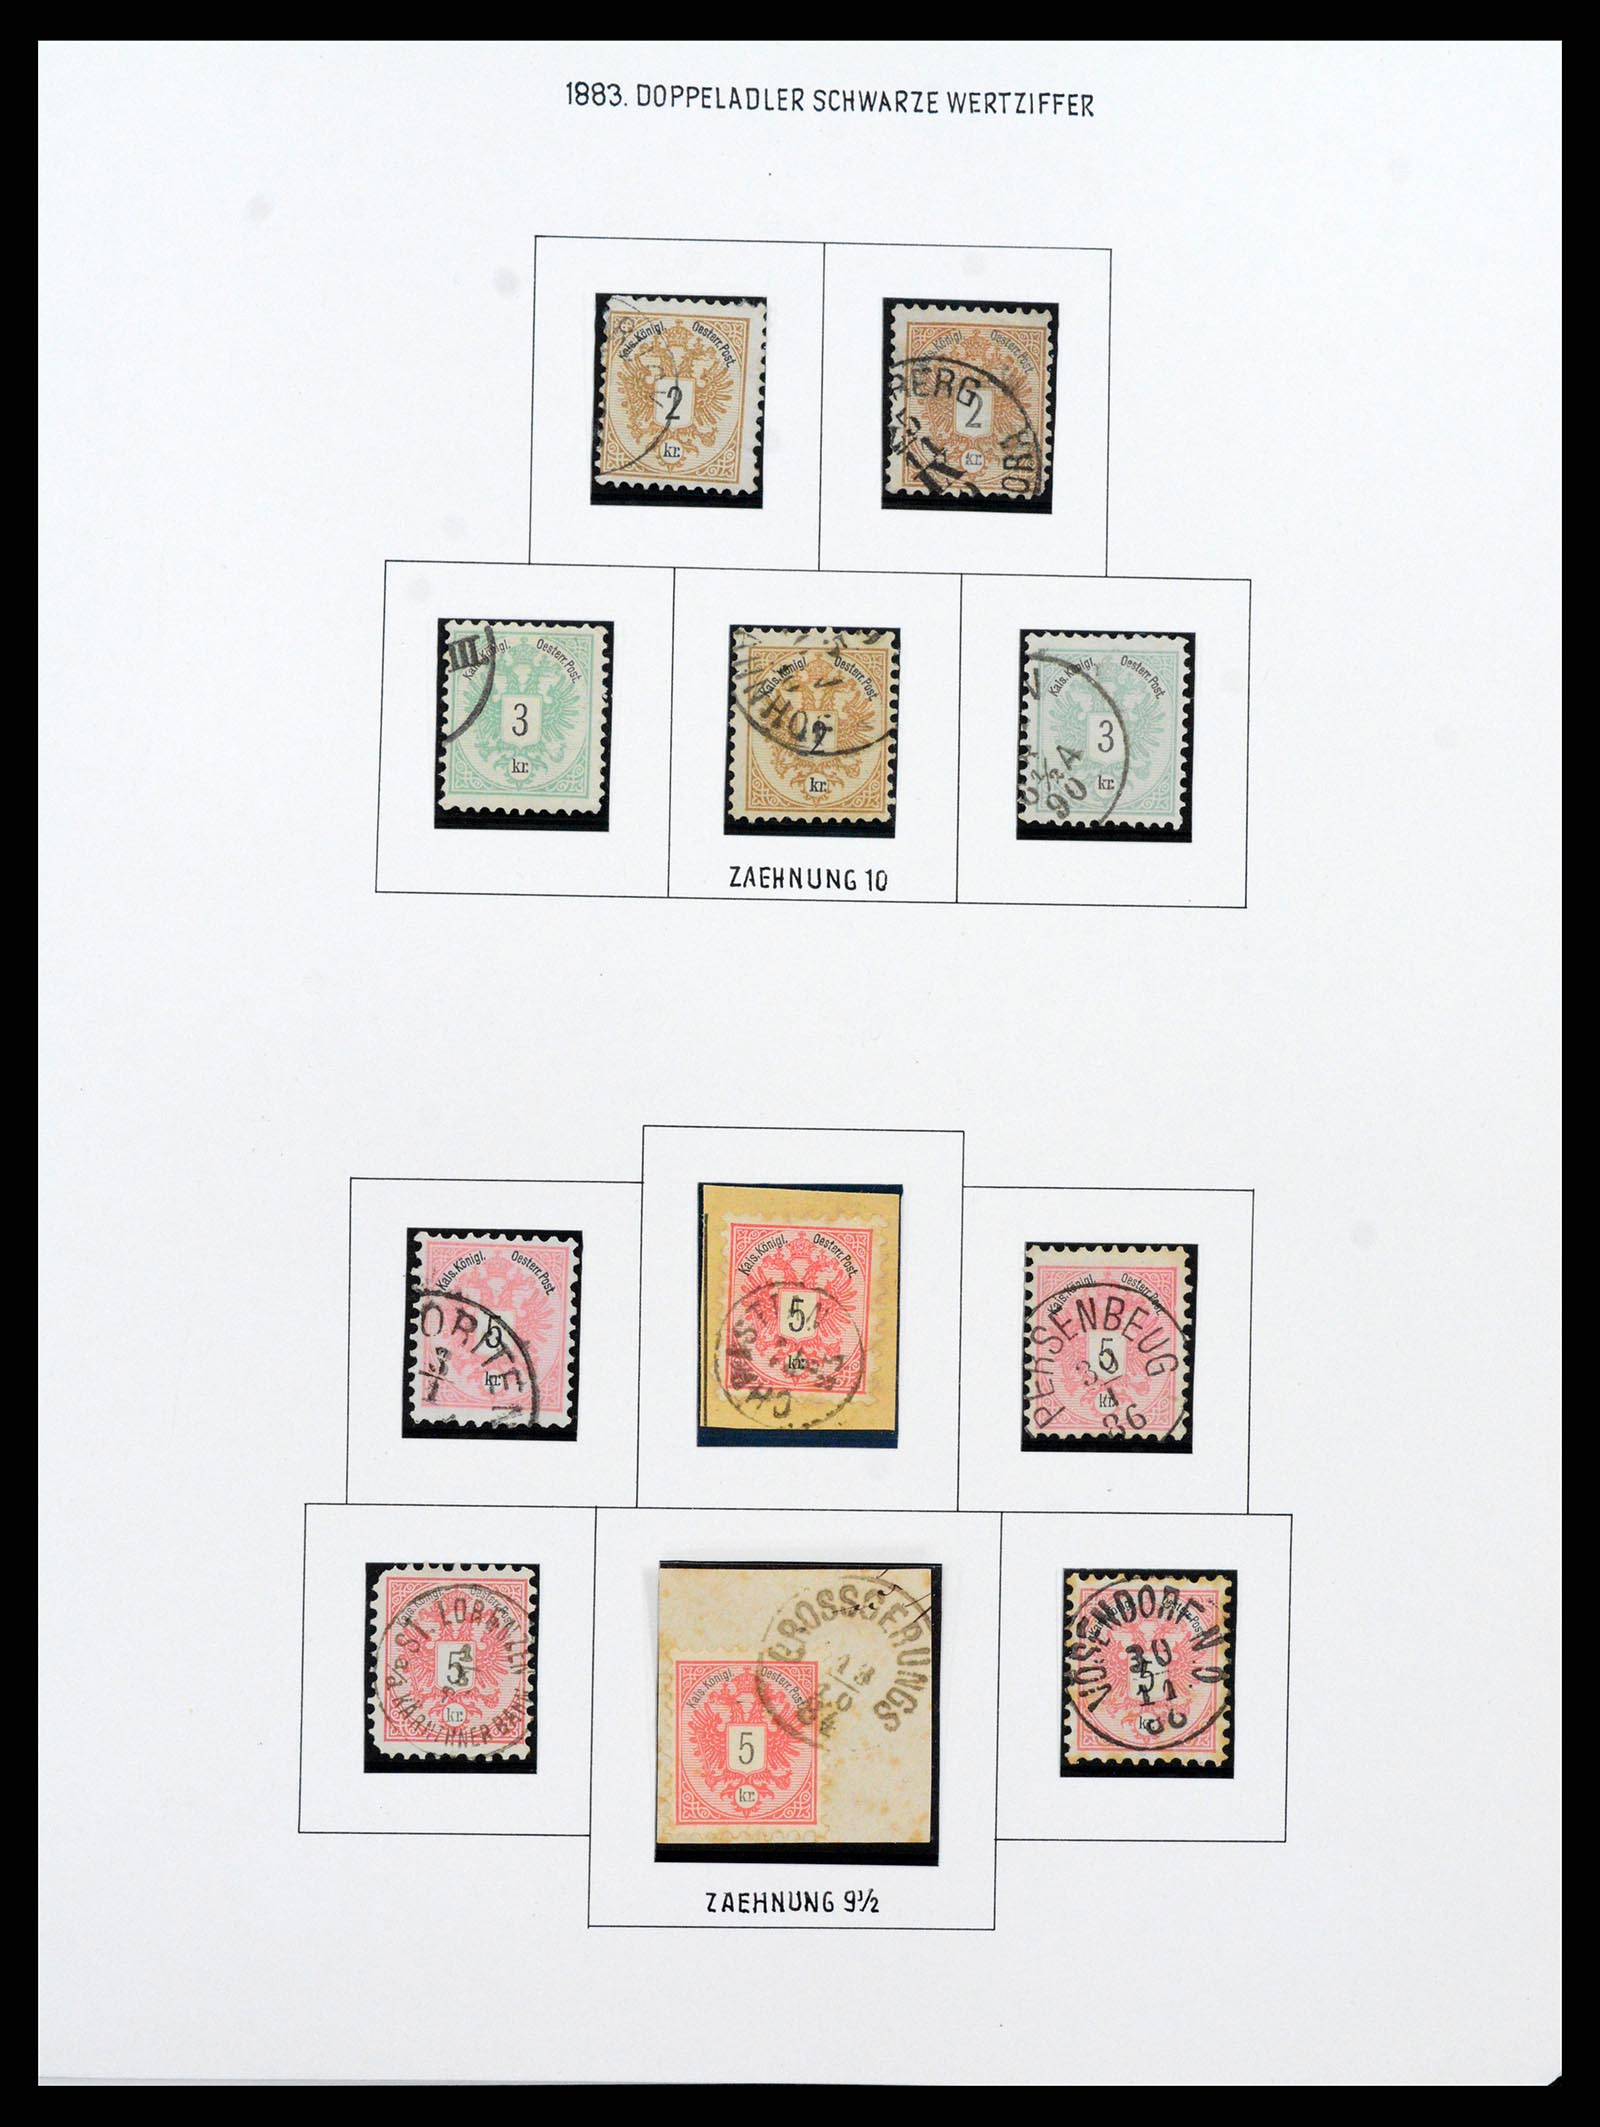 37090 073 - Postzegelverzameling 37090 Oostenrijk supercollectie 1850-1947.